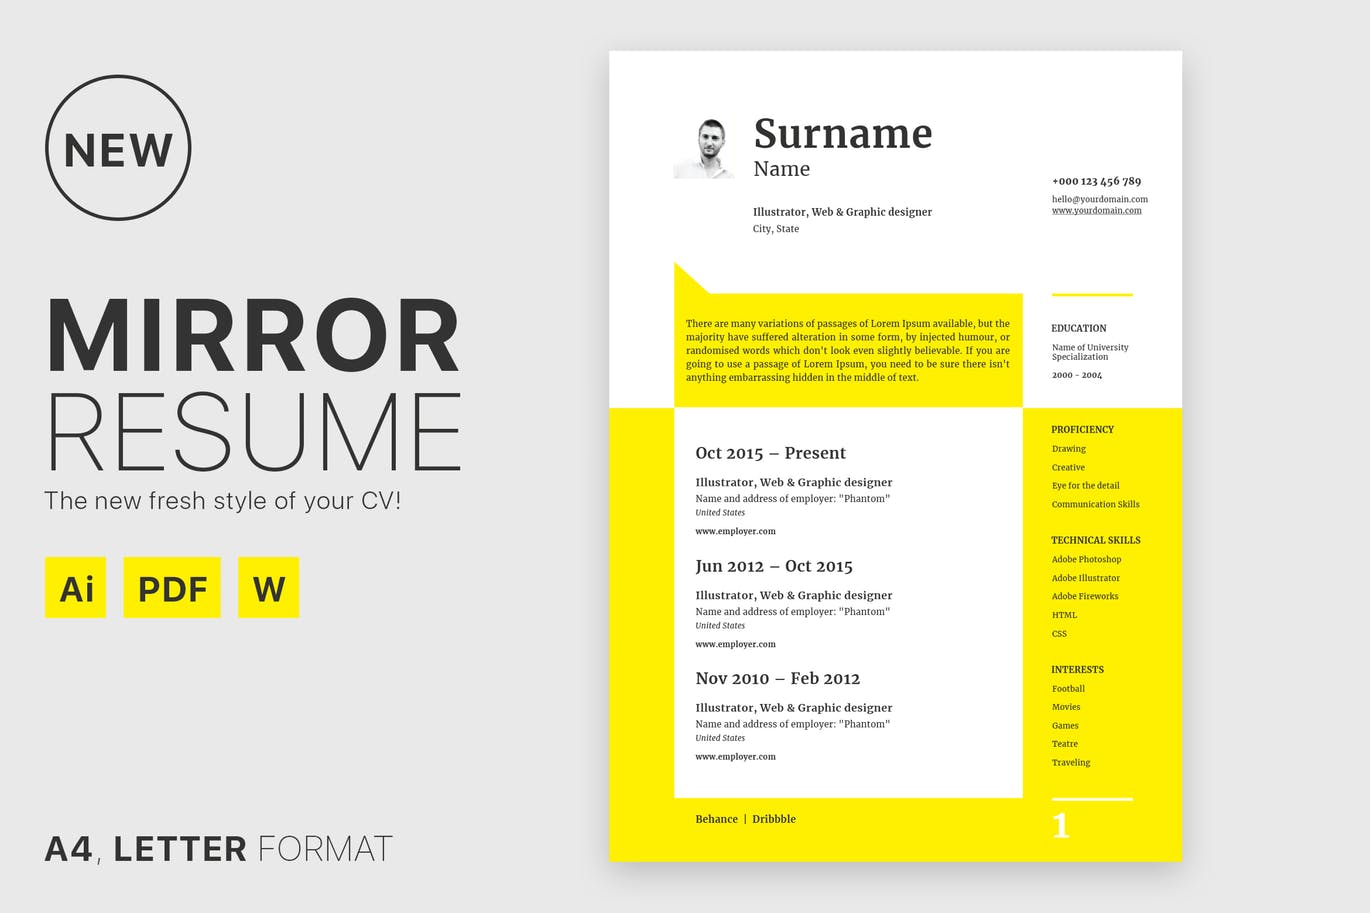 简约风格设计师/产品经理个人简历设计模板 Mirror Resume插图